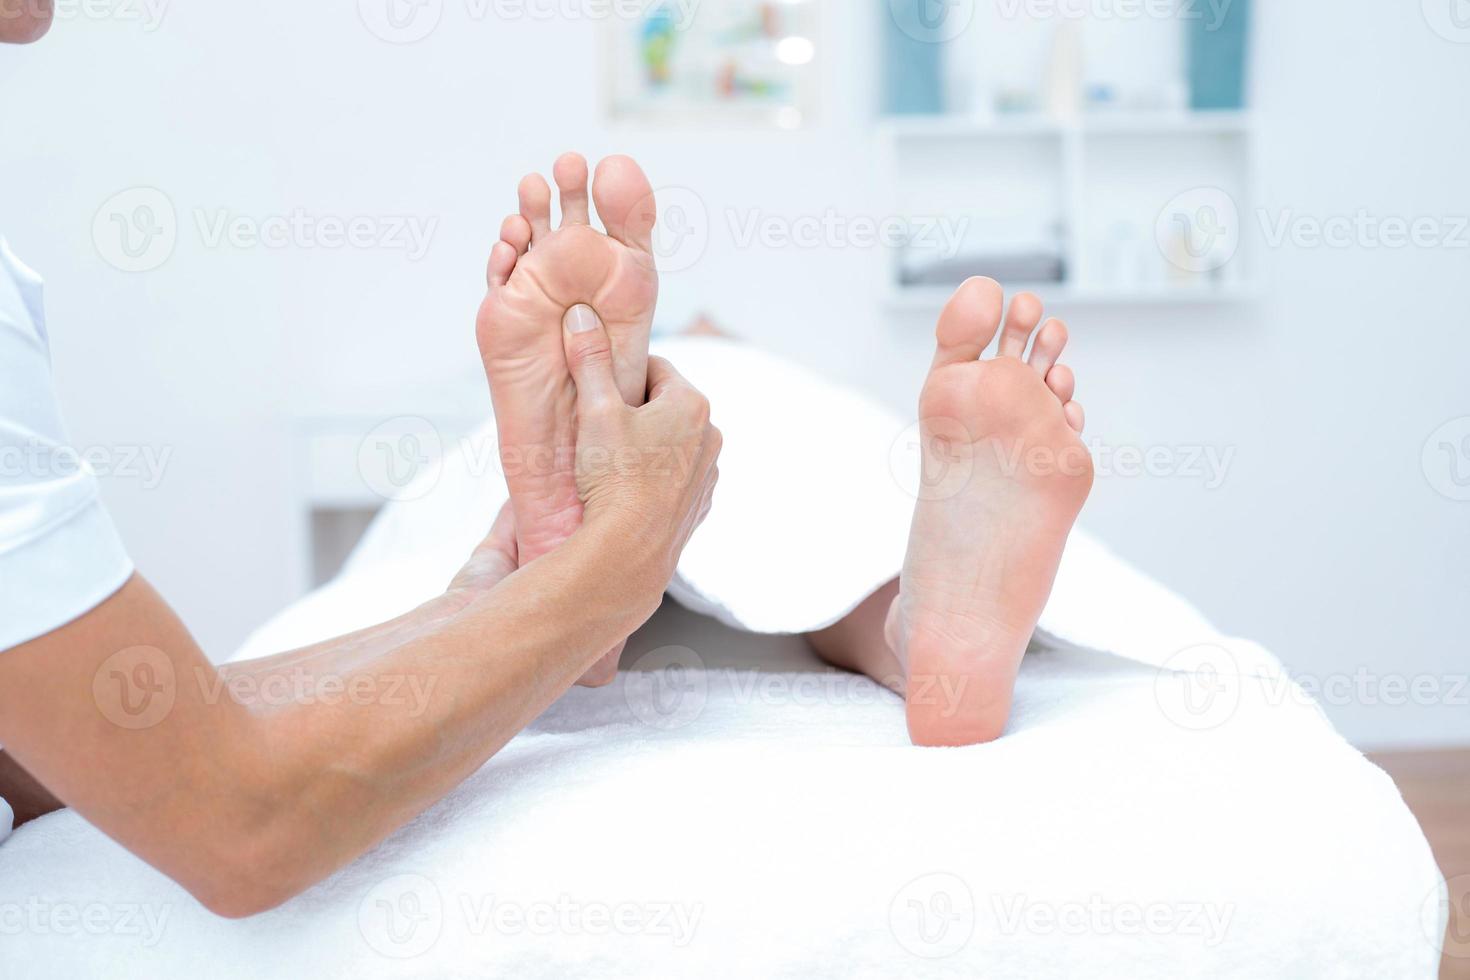 fisioterapeuta haciendo masaje de pies foto